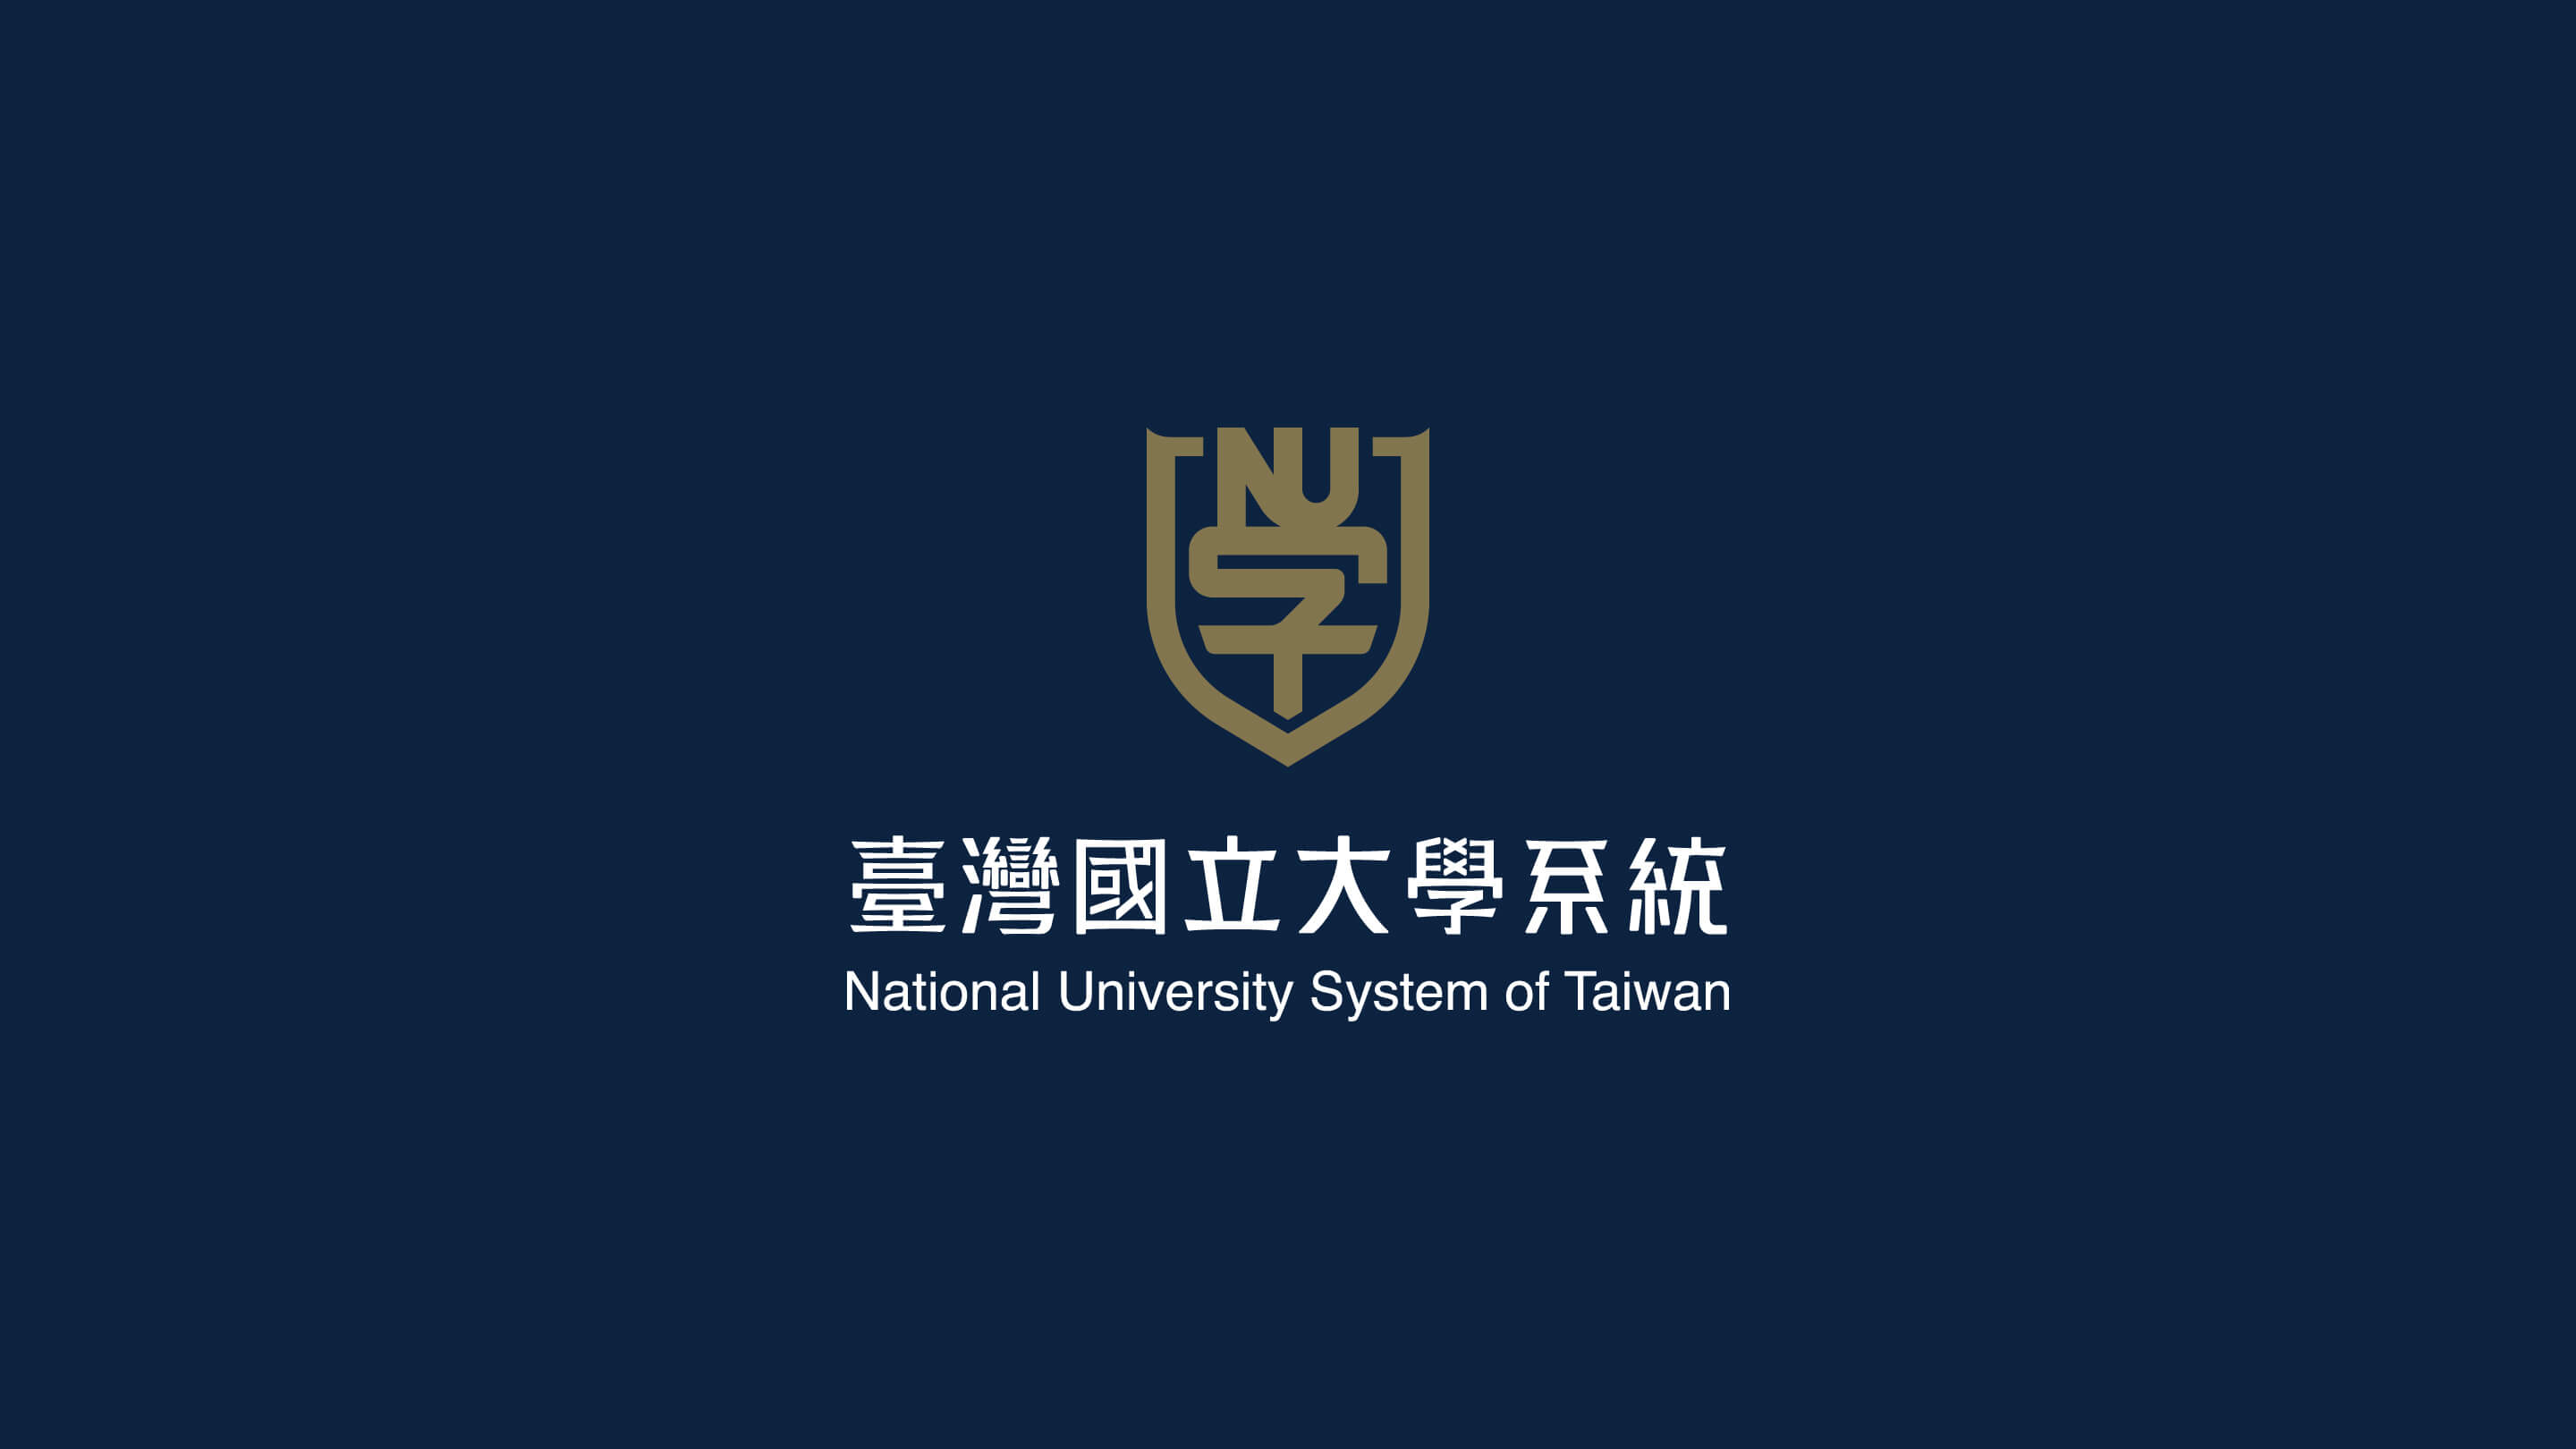 臺灣國立大學系統 品牌識別商標設計